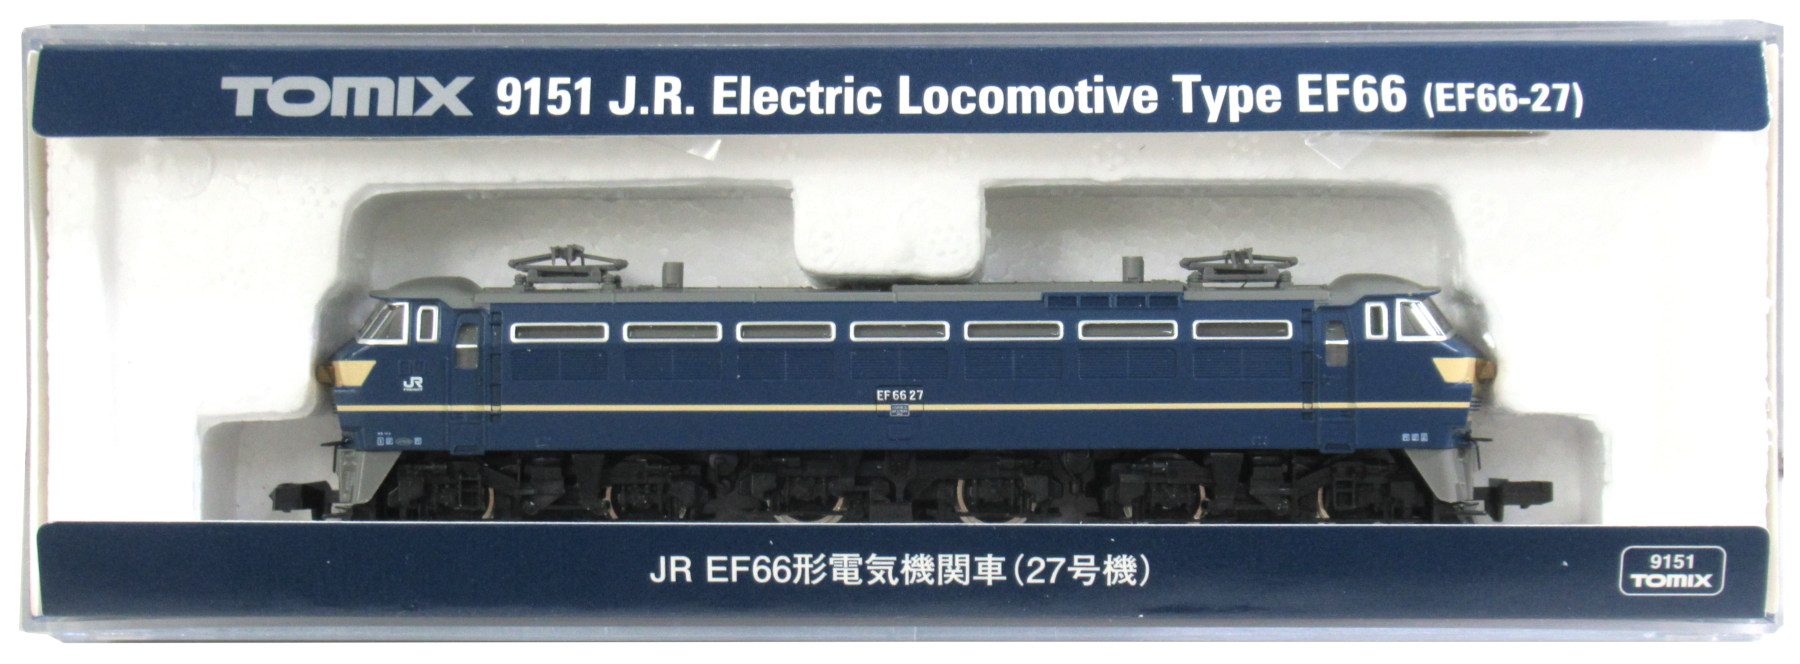 9151 JR EF66形(27号機)